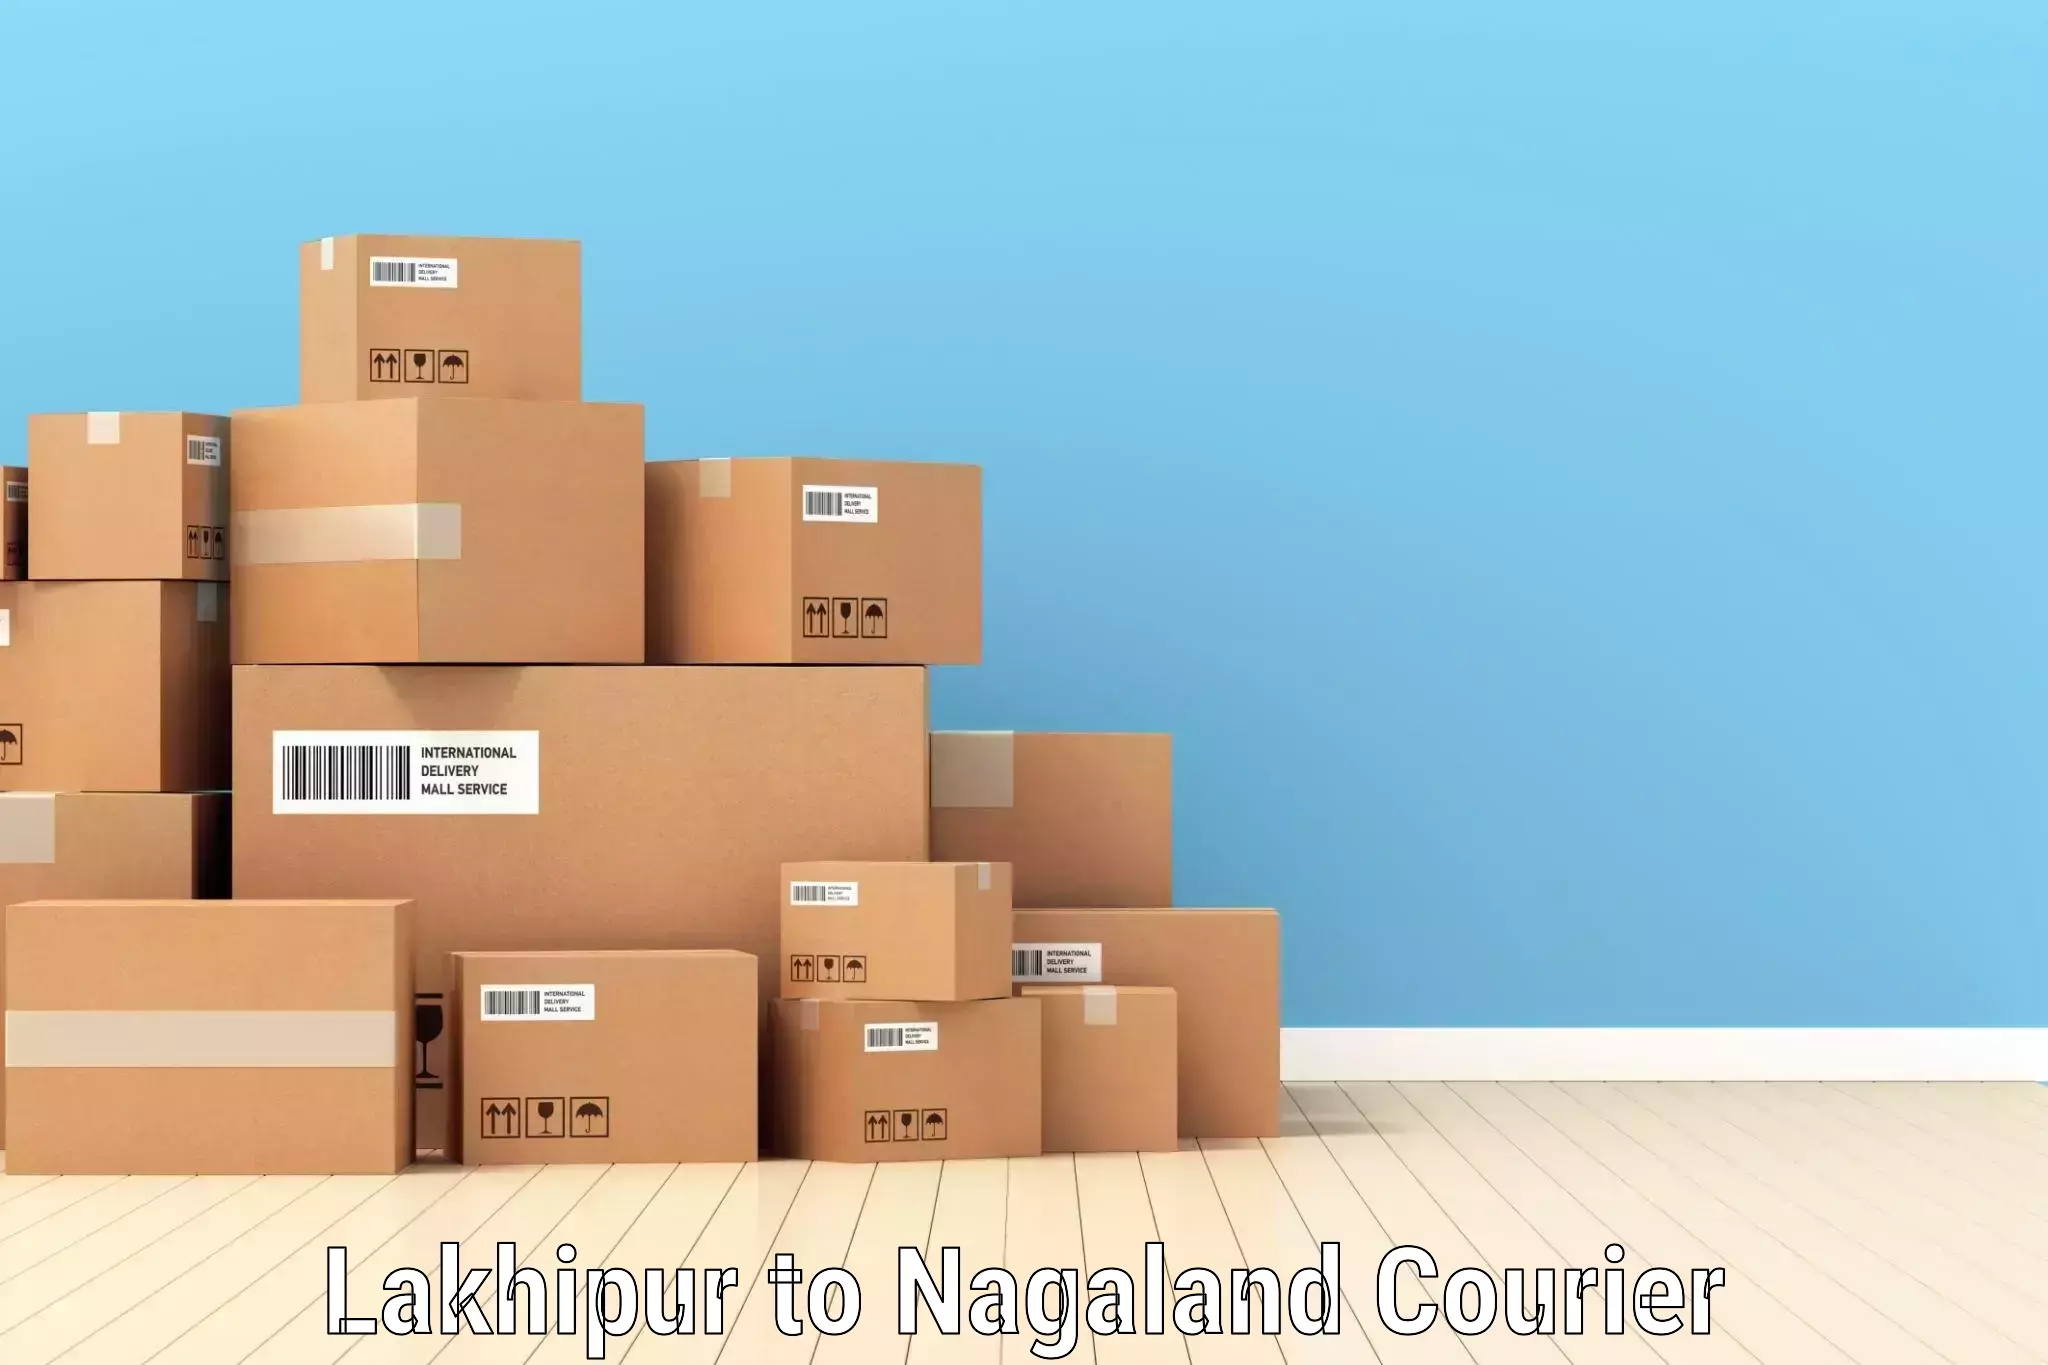 High-capacity parcel service Lakhipur to Wokha